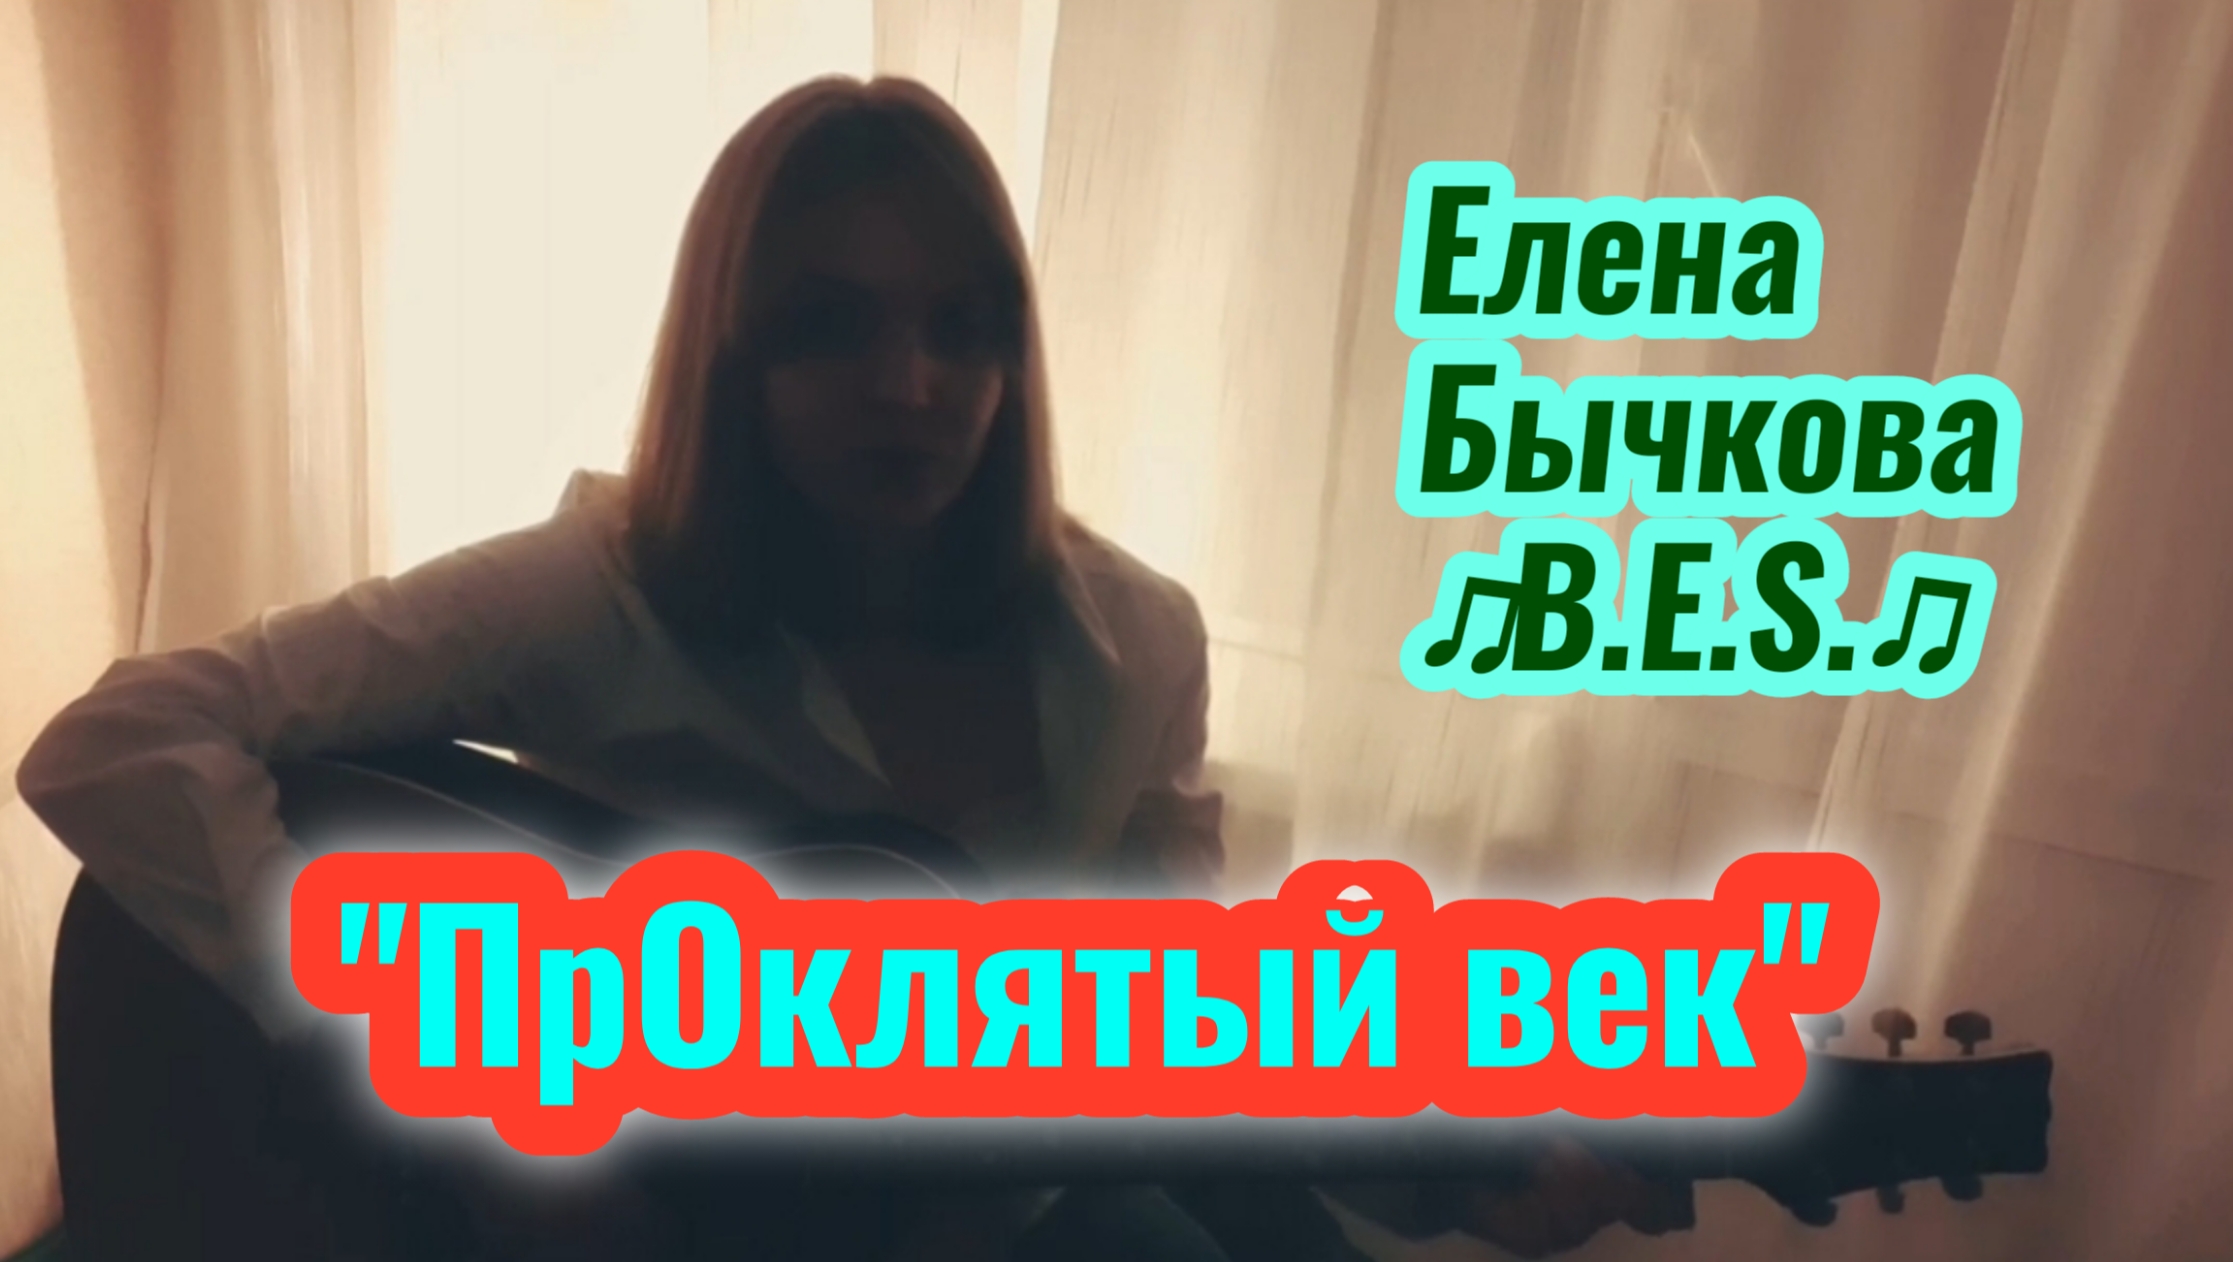 "ПрОклятый век" - Елена Бычкова ♫B.E.S.♫ (авторская песня под гитару, 12.2022г.)